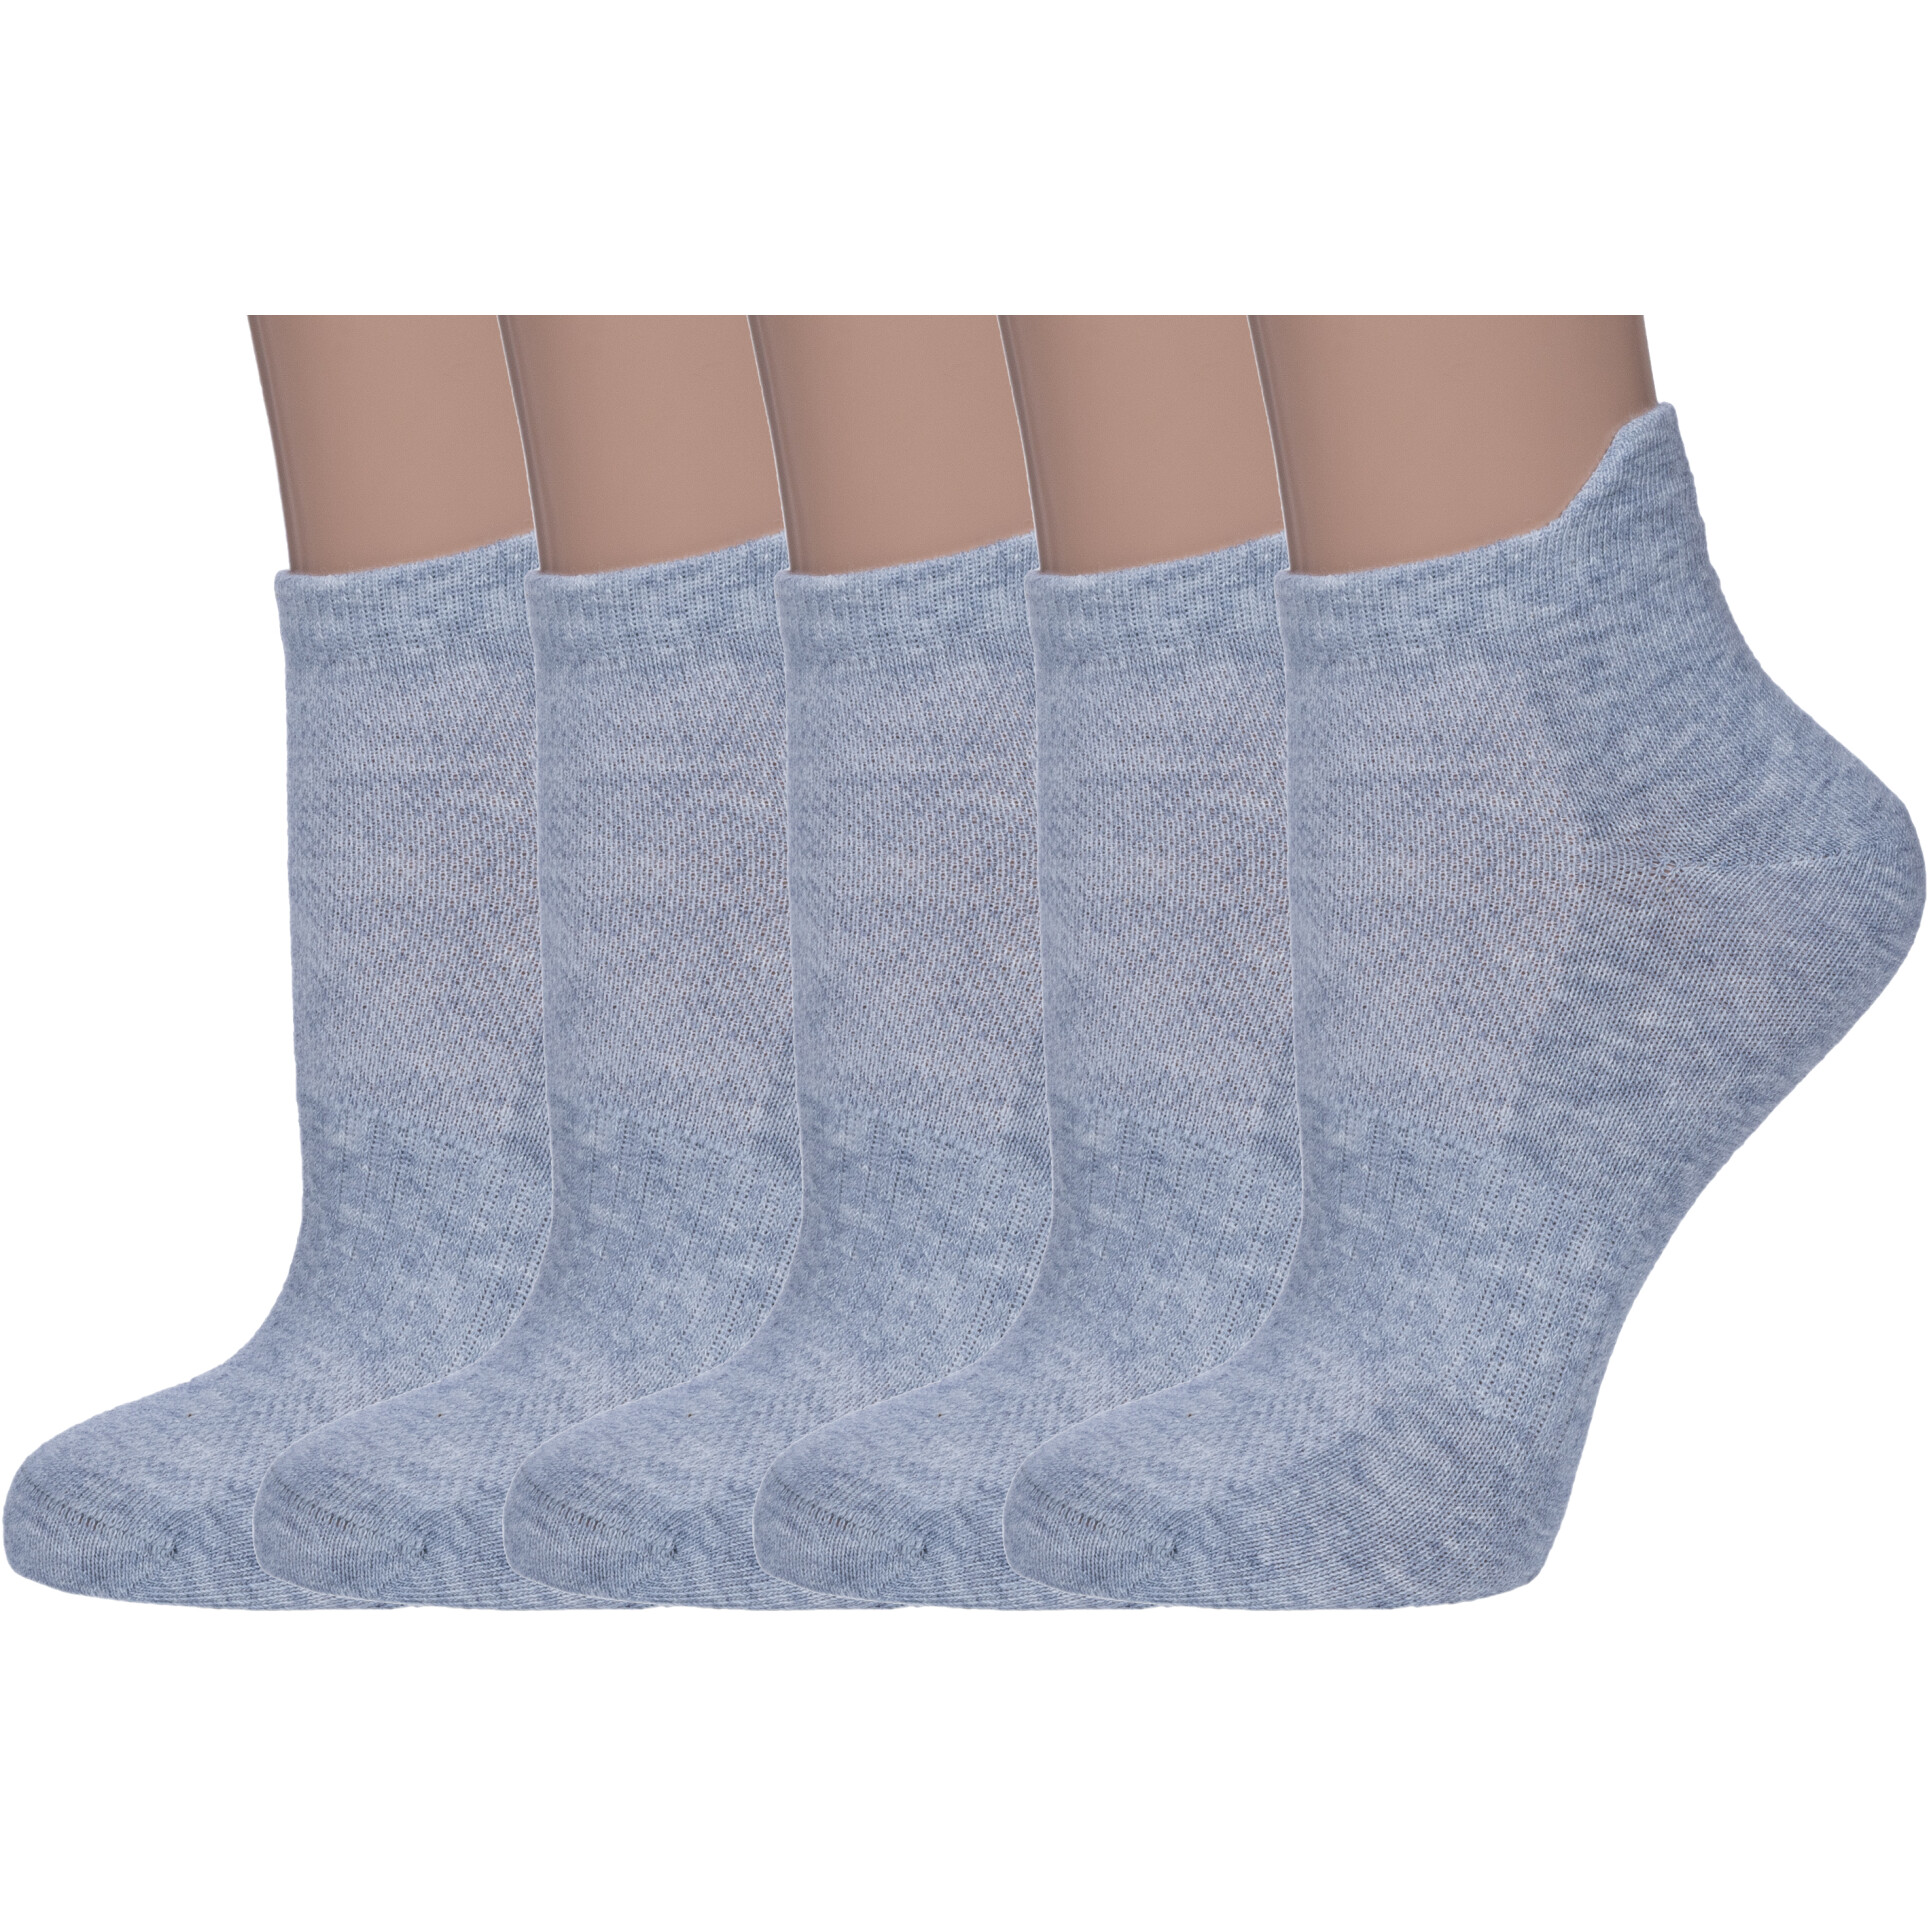 Комплект носков женских Смоленская Чулочная Фабрика 5-422С22 серых 23, 5 пар